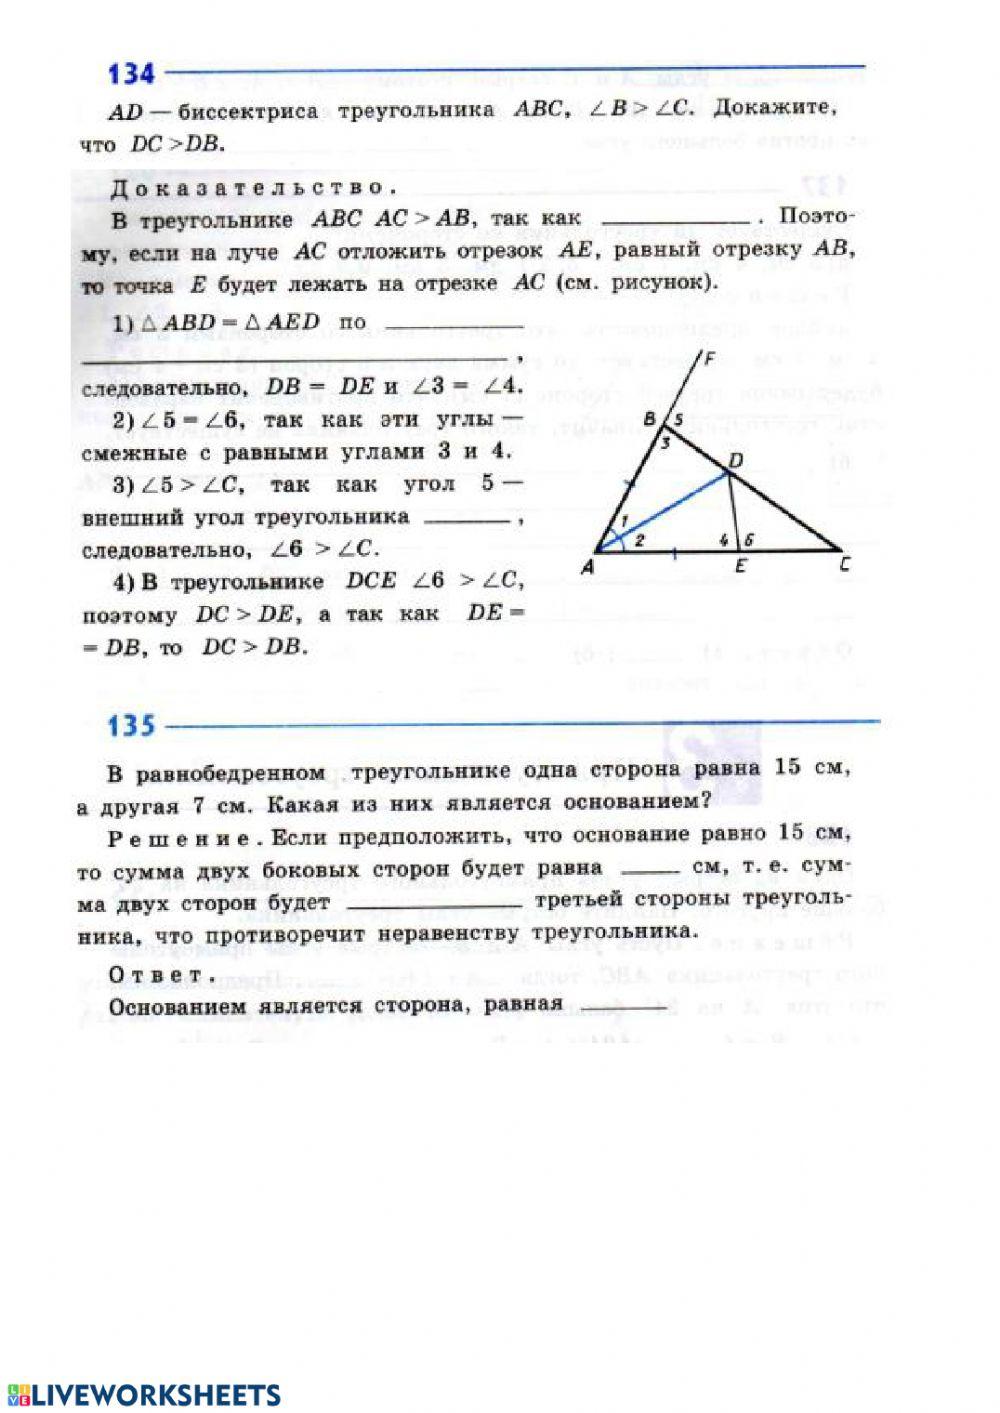 Соотношения между сторонами и углами треугольника